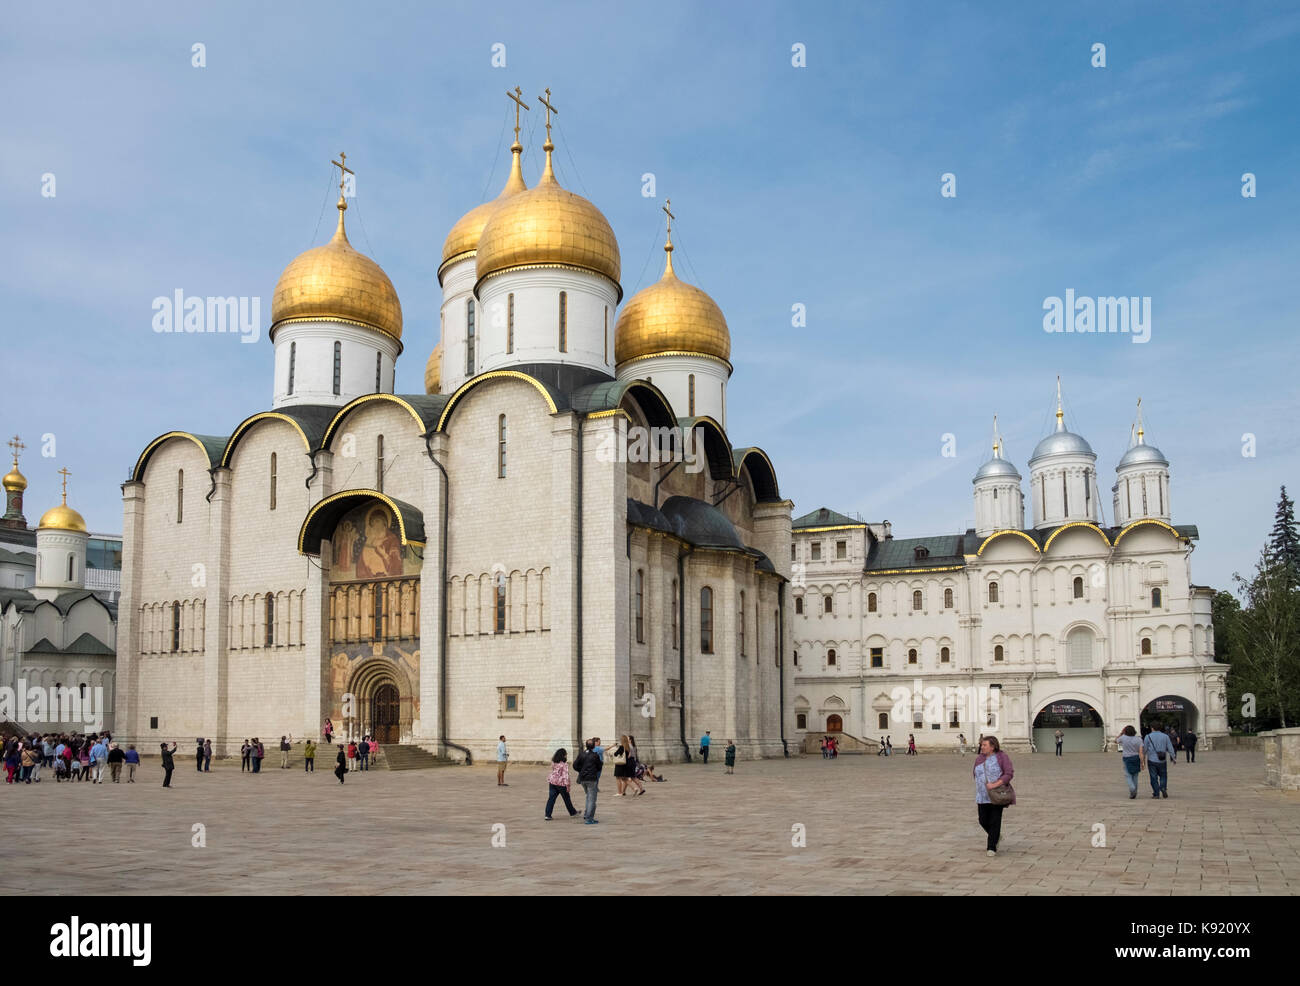 La Catedral de la Dormición, o la Catedral de la Asunción, es una iglesia ortodoxa rusa situada en la Plaza de la Catedral, el Kremlin, Moscú, Rusia. Foto de stock